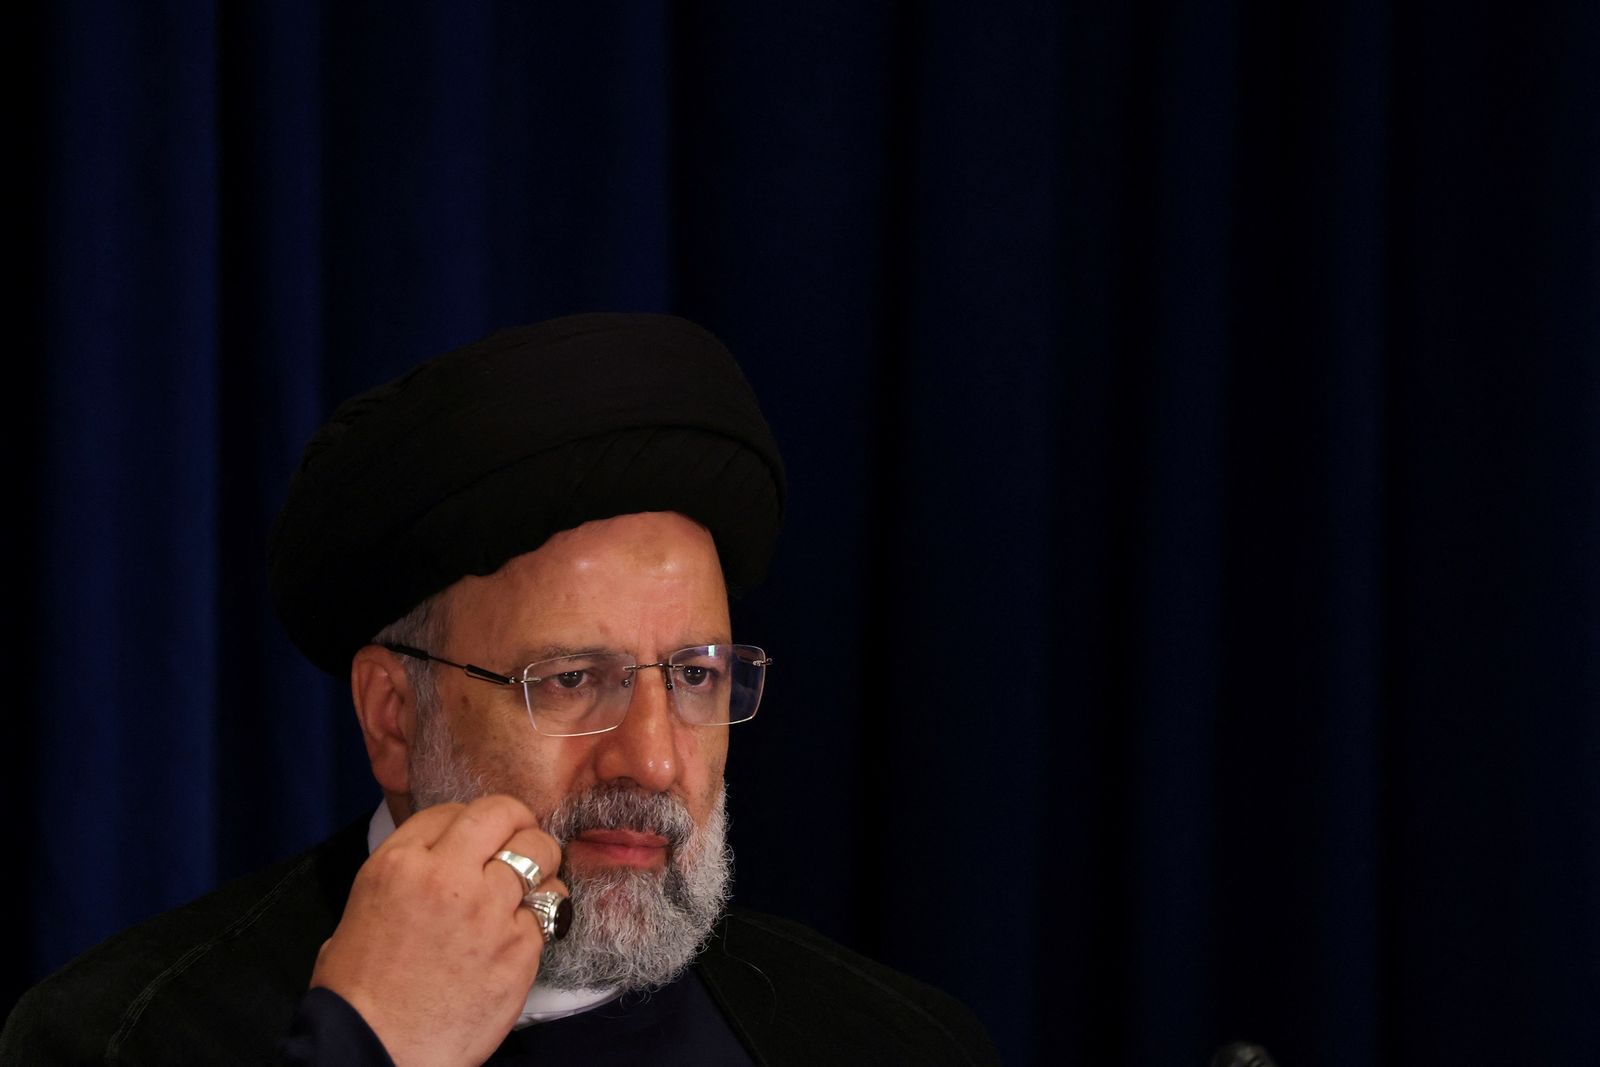 مصير غامض للرئيس الإيراني ووزير الخارجية بعد حادثة مروحيتهما